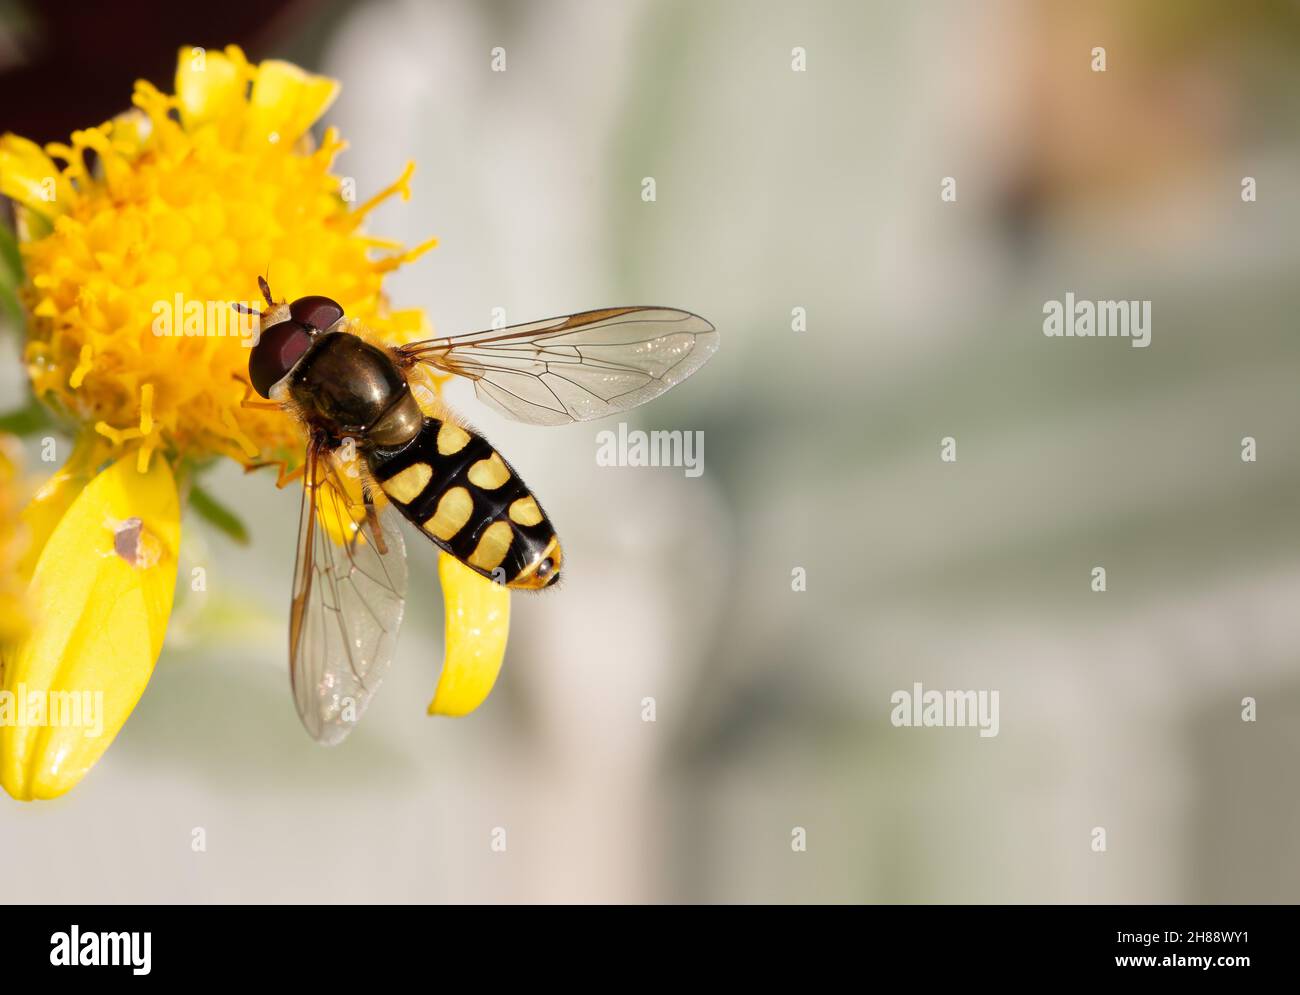 Hover fly / Marmalade hoverfly (Episyrphus balteatus) su testa di fiore giallo con spazio copia Foto Stock